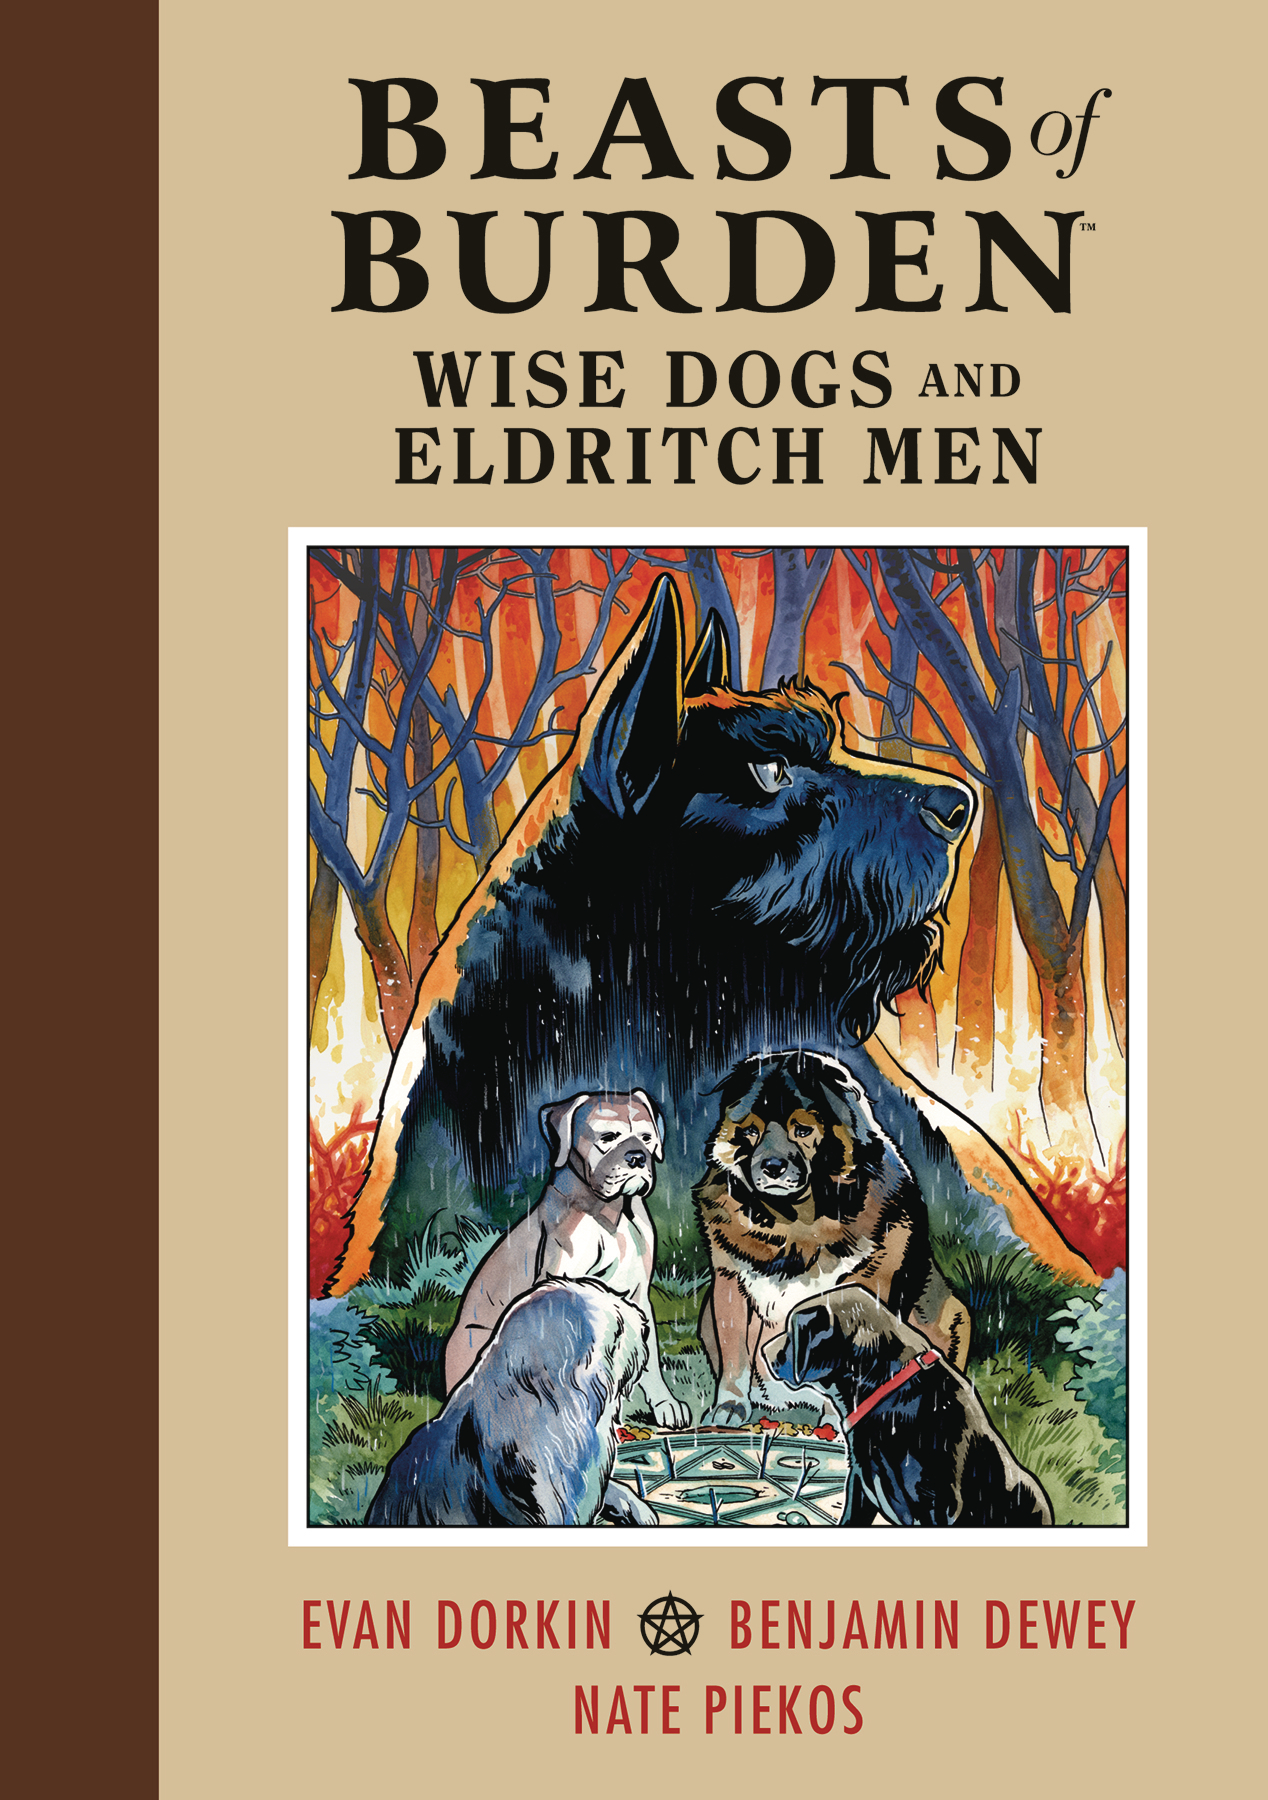 Beasts of Burden Hardcover Volume 1 Wise Dogs & Eldritch Men 